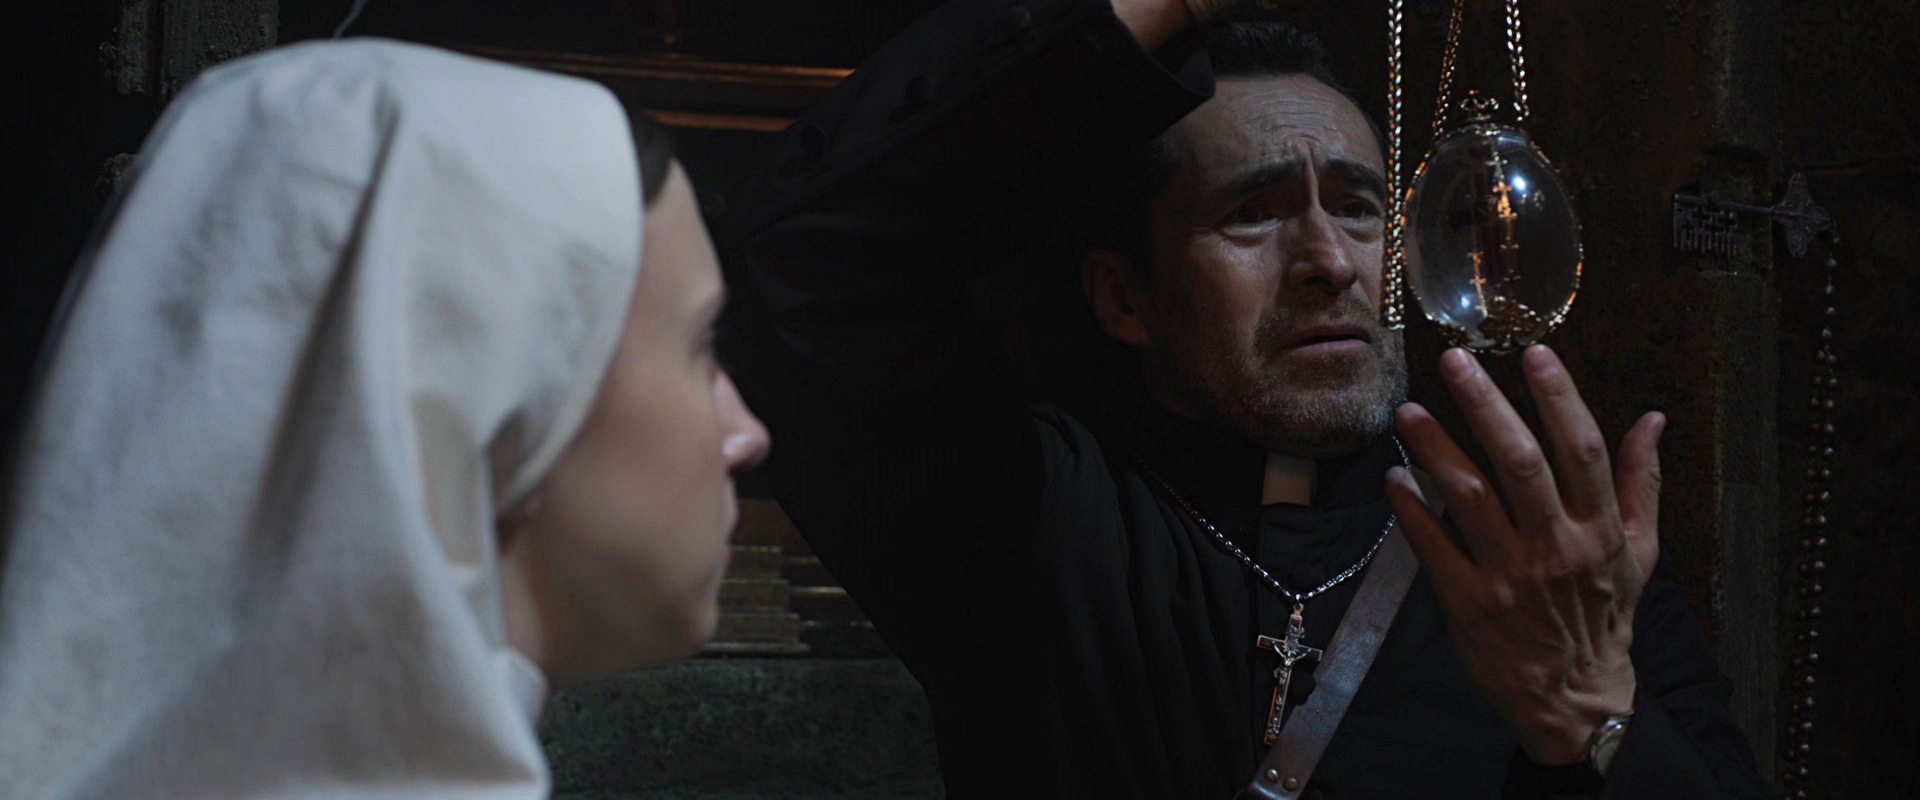 驚悚程度超越前作《鬼修女II》6看點！瓦拉克再戰艾琳修女，鬼手伸向修道院吊死神父